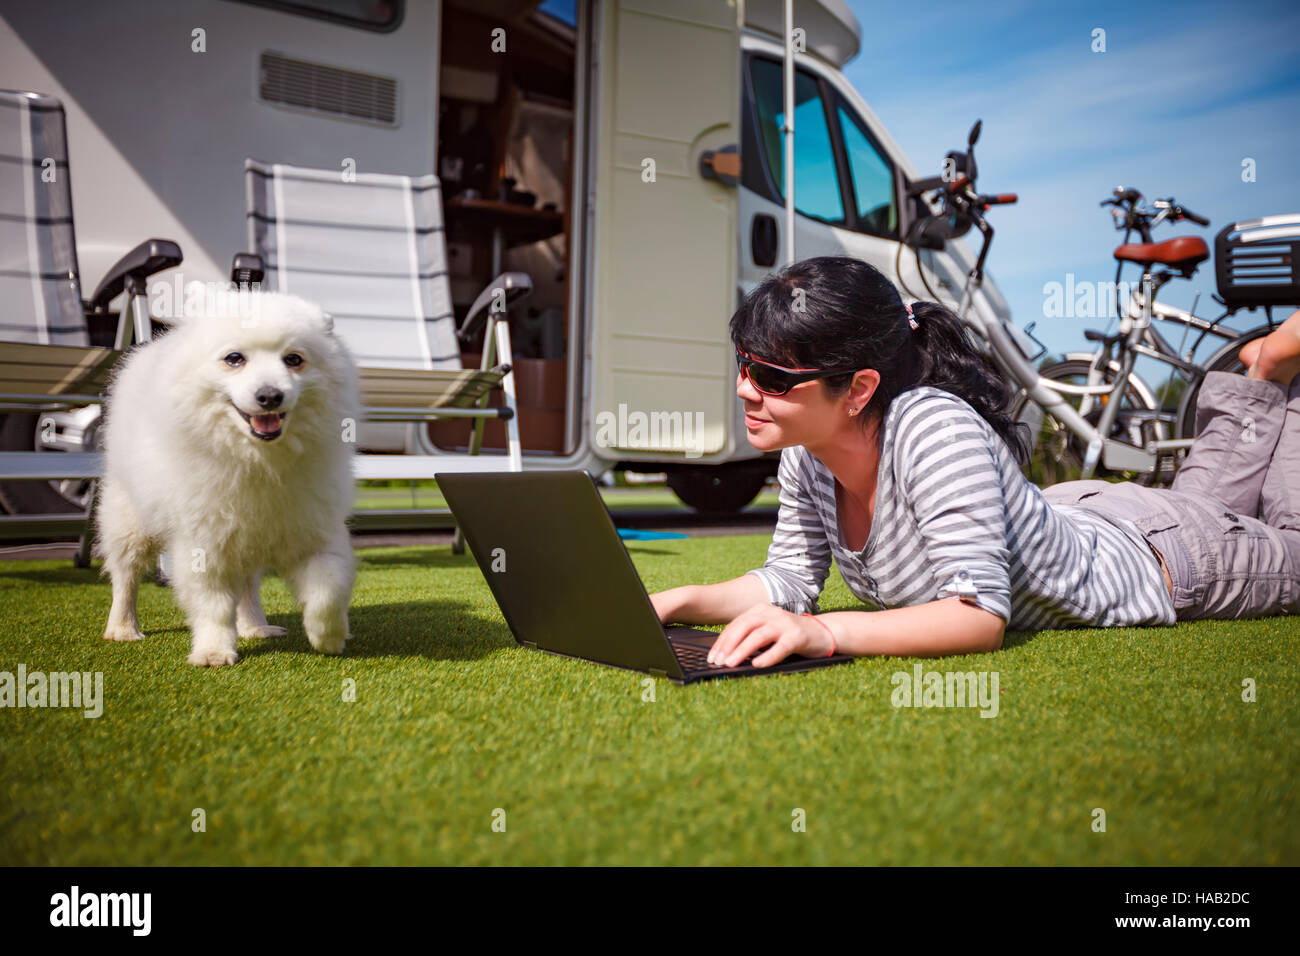 Donna sul prato con un cane che guardano un notebook. Caravan auto vacanza. Vacanza per la famiglia in viaggio, viaggio vacanza in camper Foto Stock